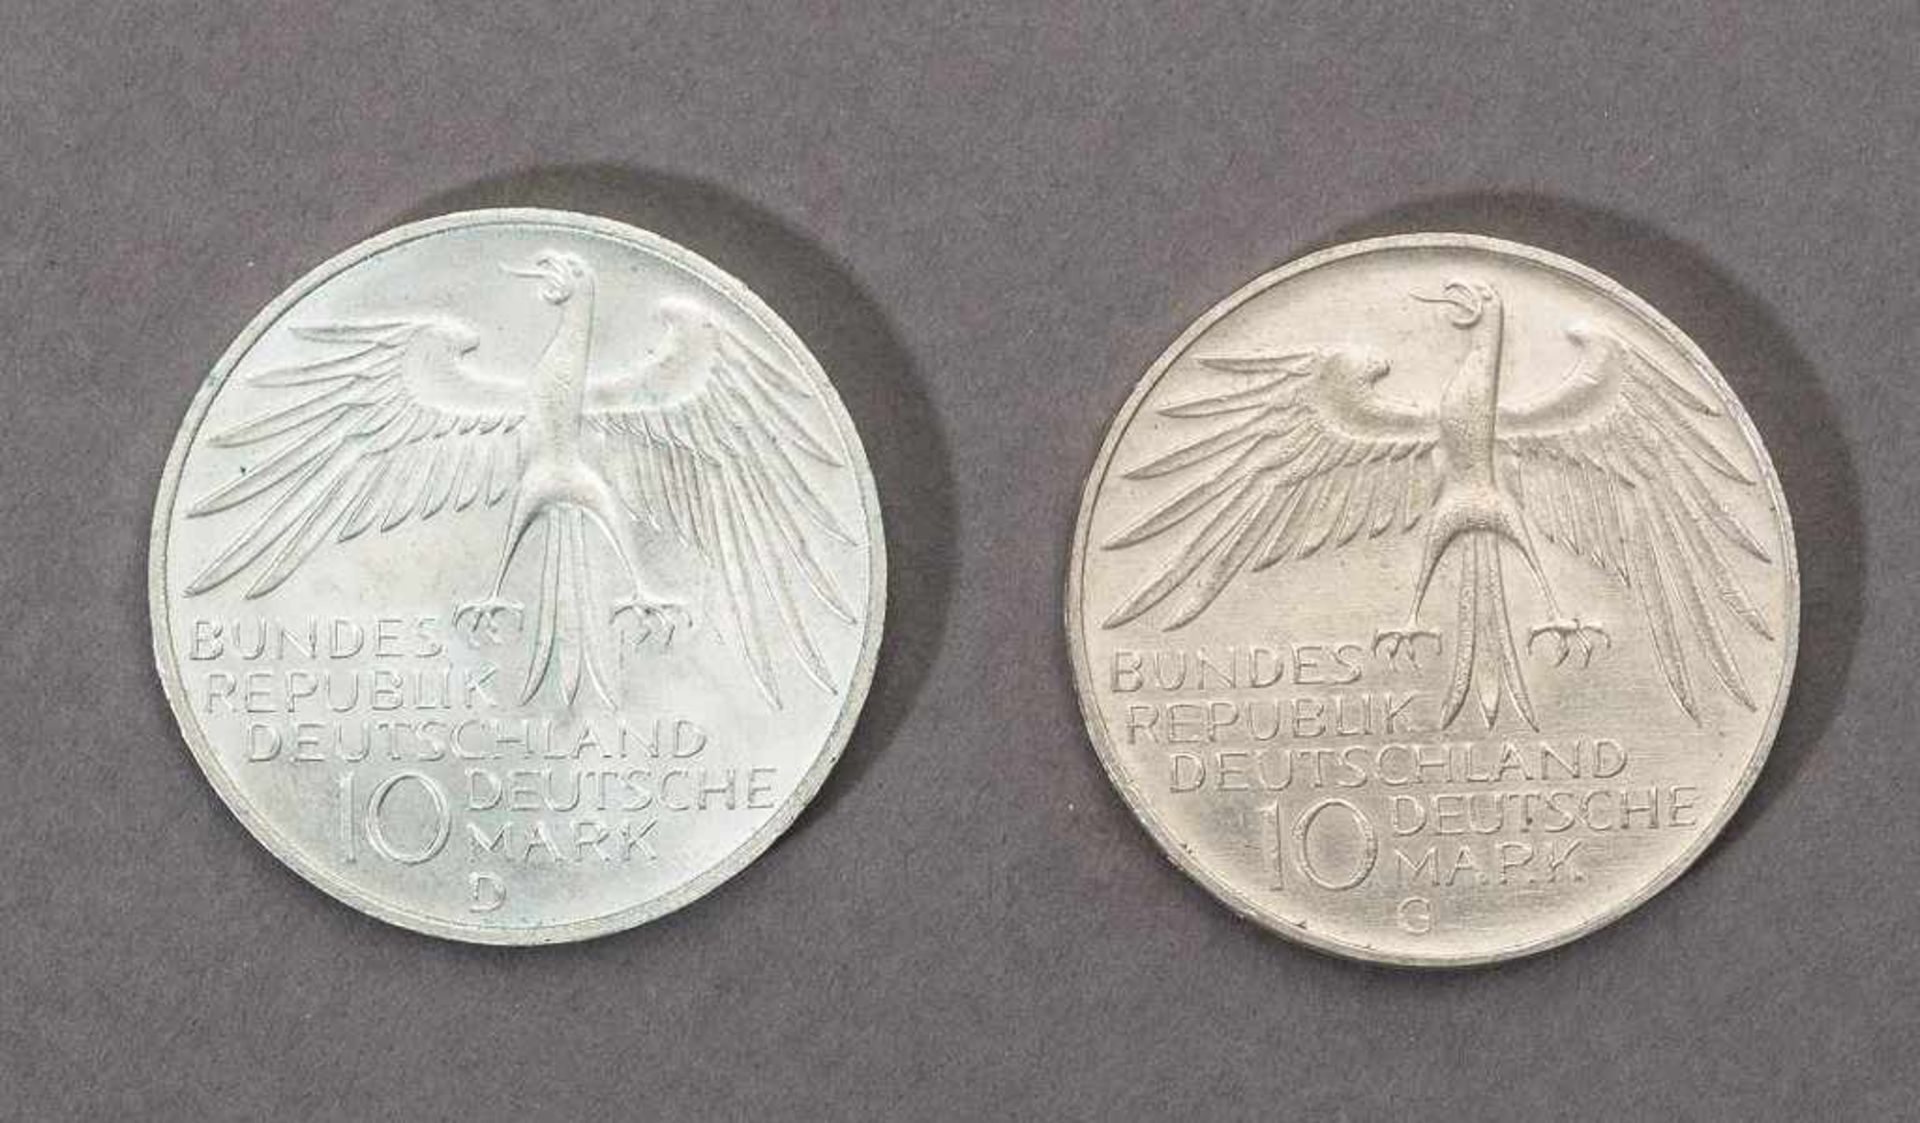 10 Deutsche Mark.